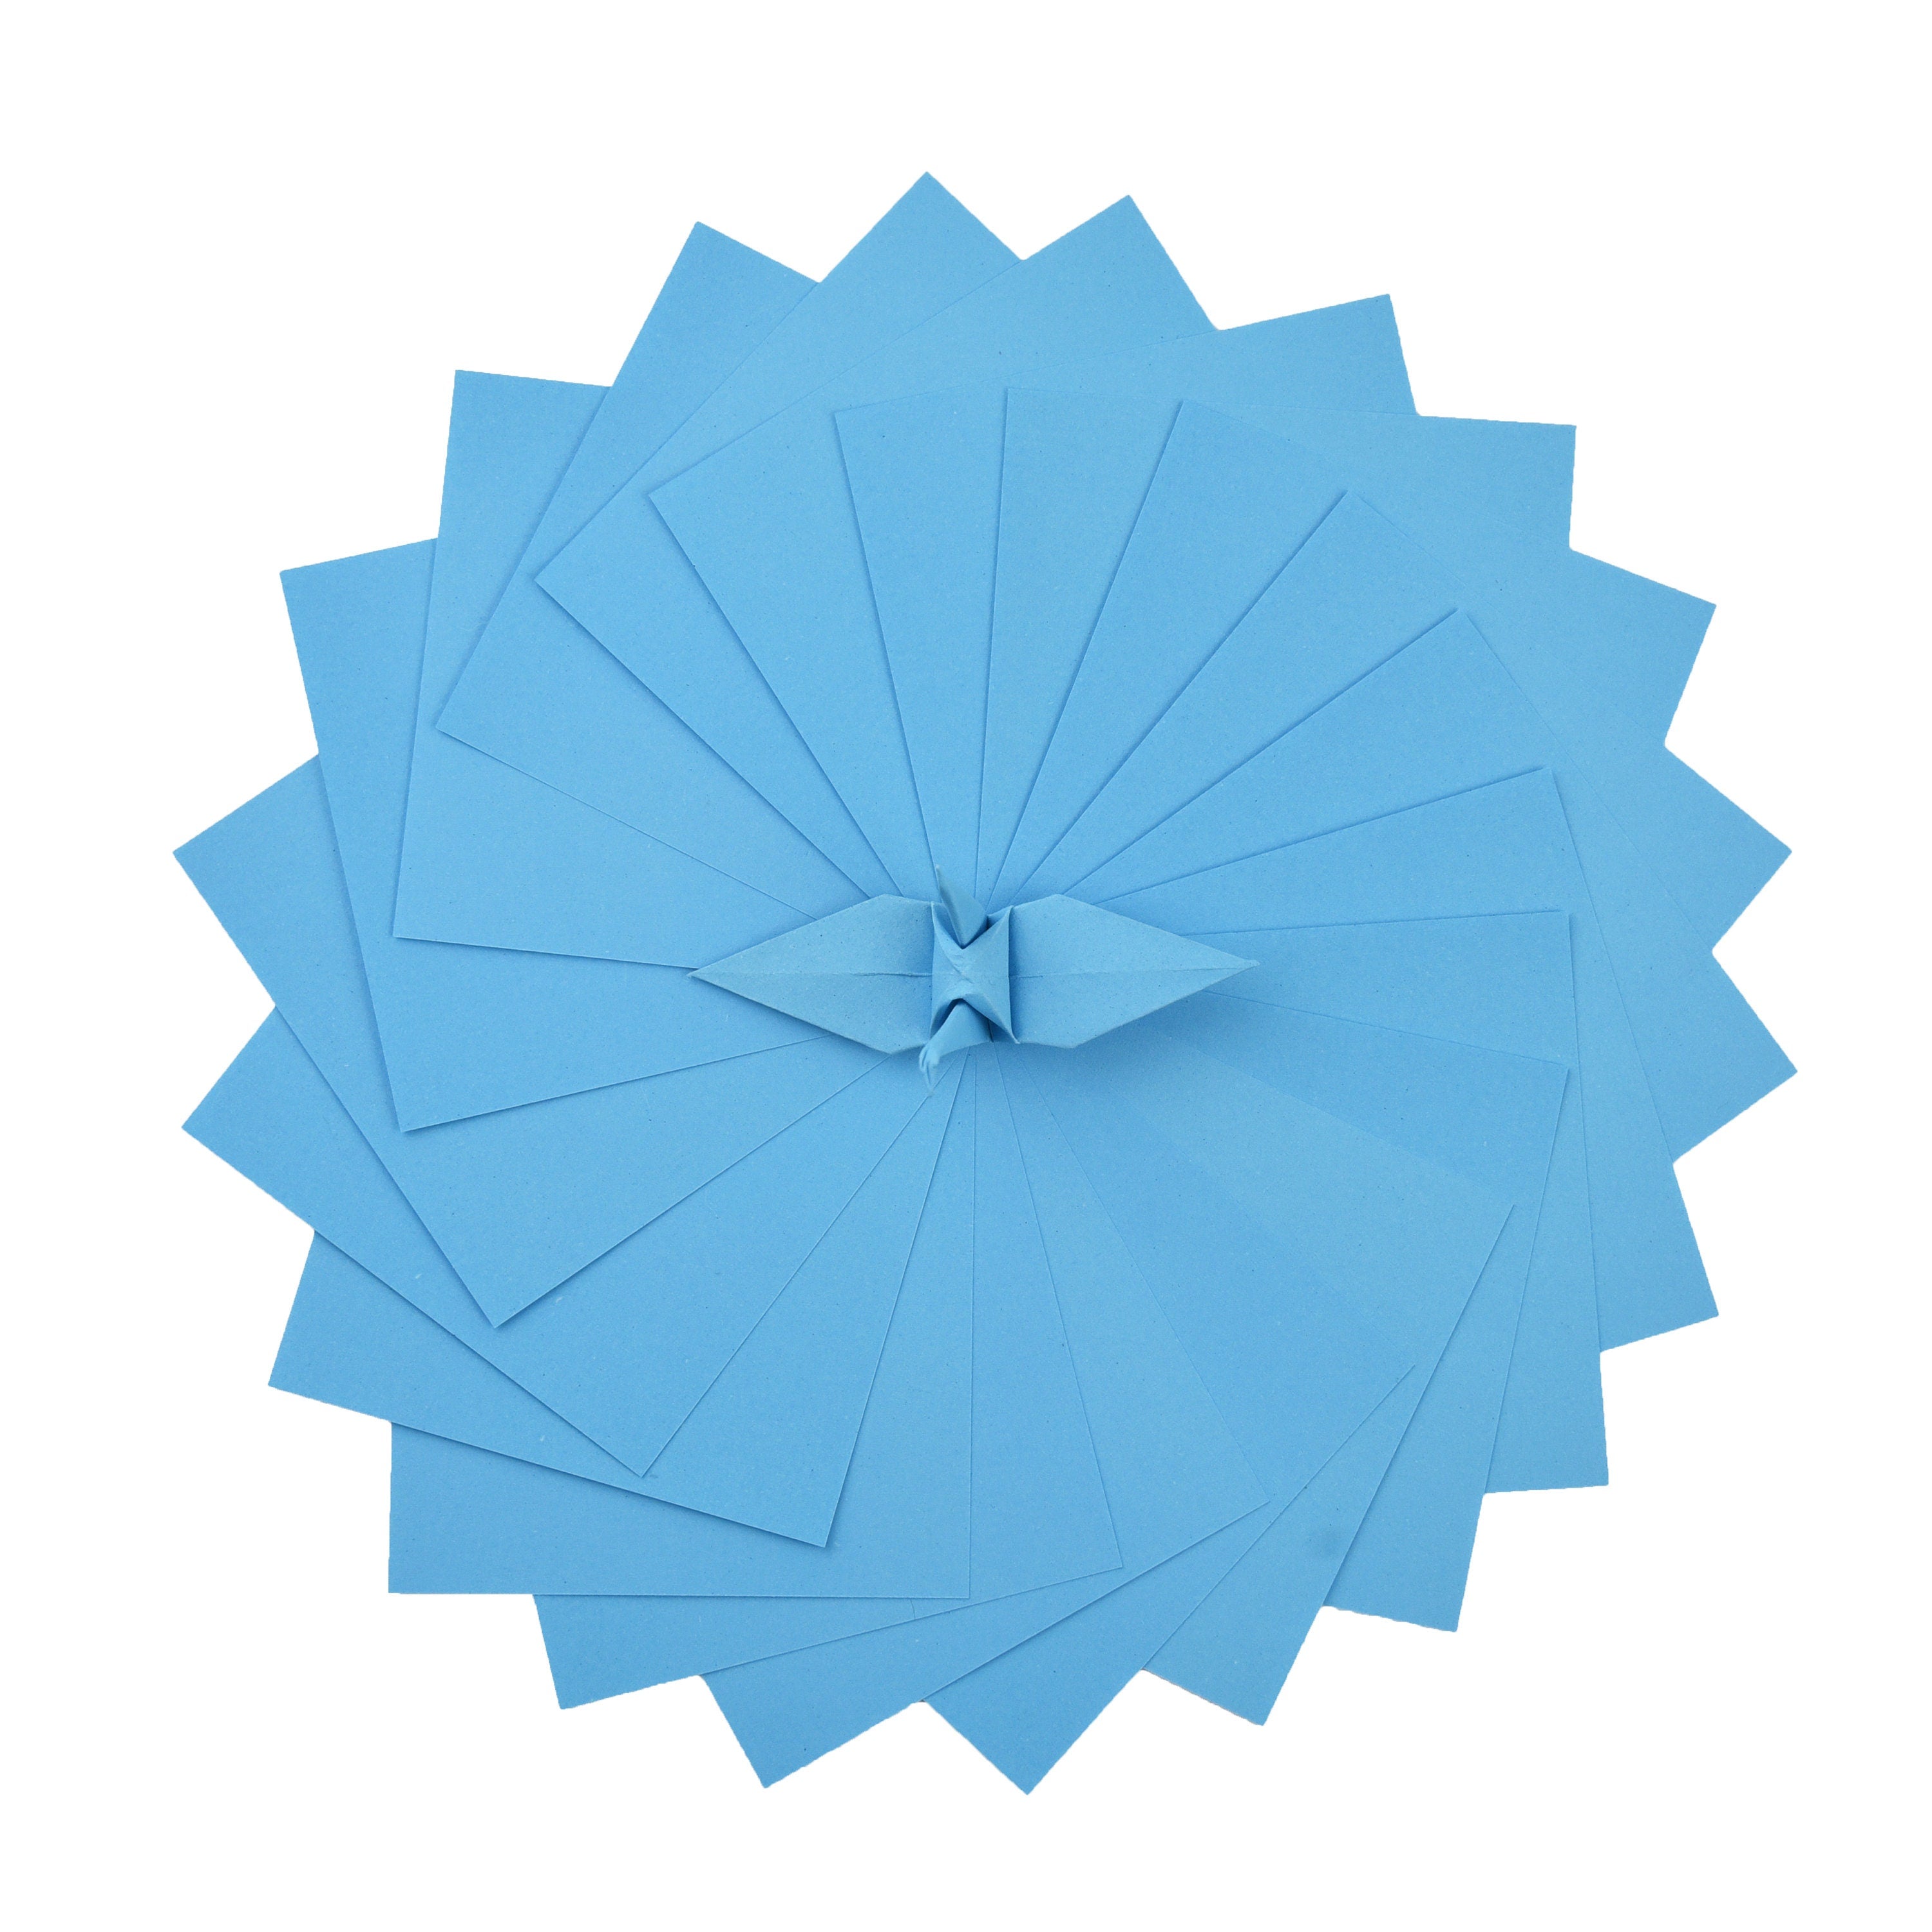 100 fogli di carta origami - 6x6 pollici - Confezione di carta quadrata per piegare, gru origami e decorazioni - S17